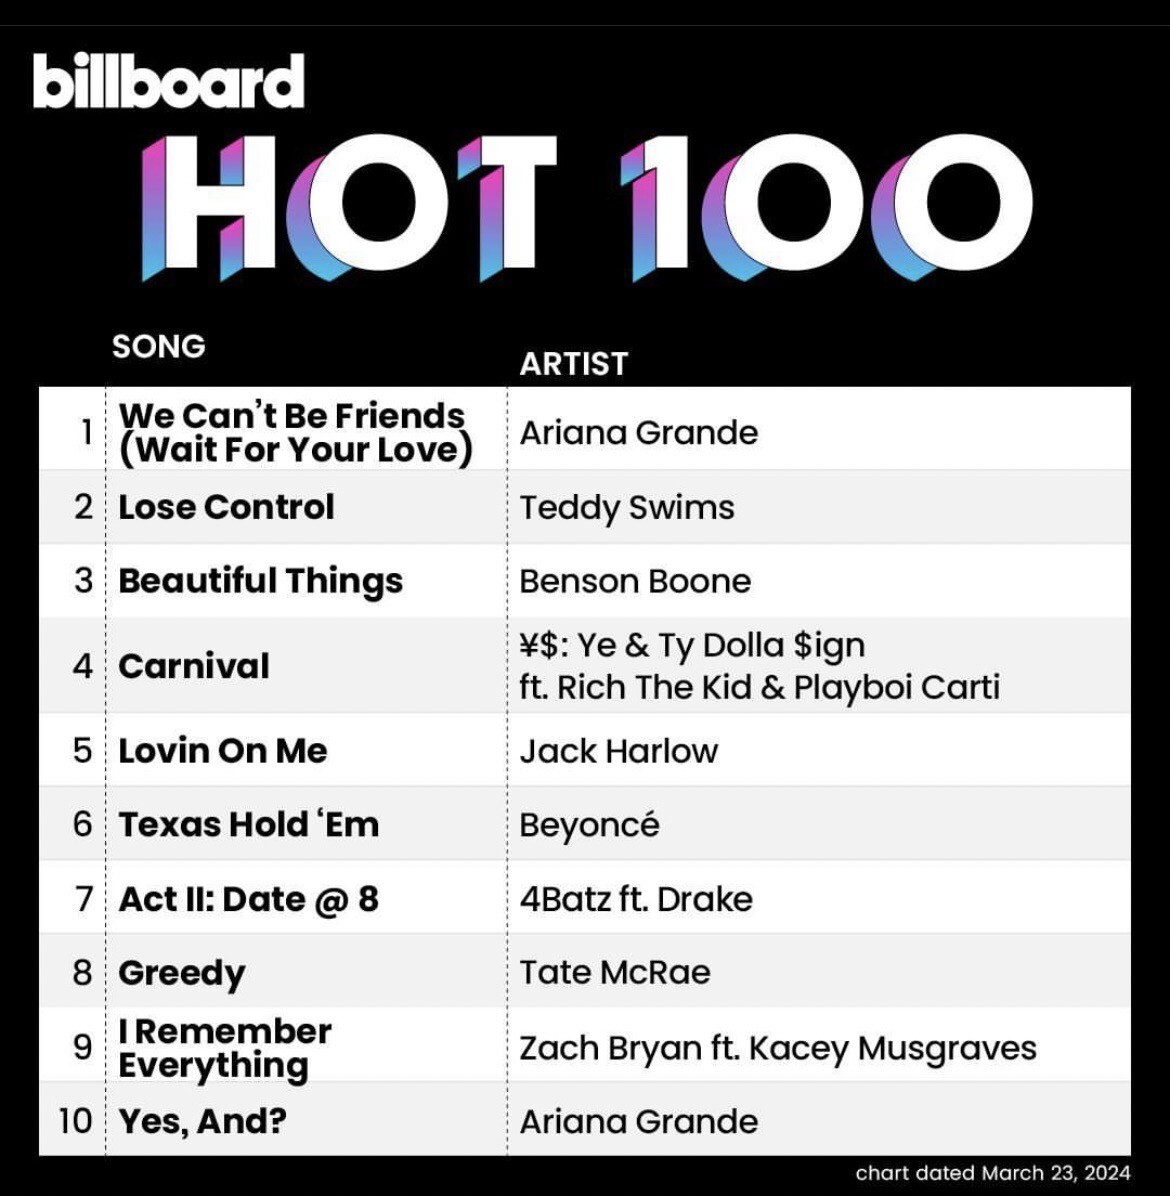 ฮอตไม่หยุด!! ซูเปอร์สตาร์สาว "Ariana Grande" ส่งแทร็กจากอัลบั้ม "eternal sunshine" ครองอันดับ 1 บนชาร์ต "Billboard 200" และ "Billboard Hot 100"